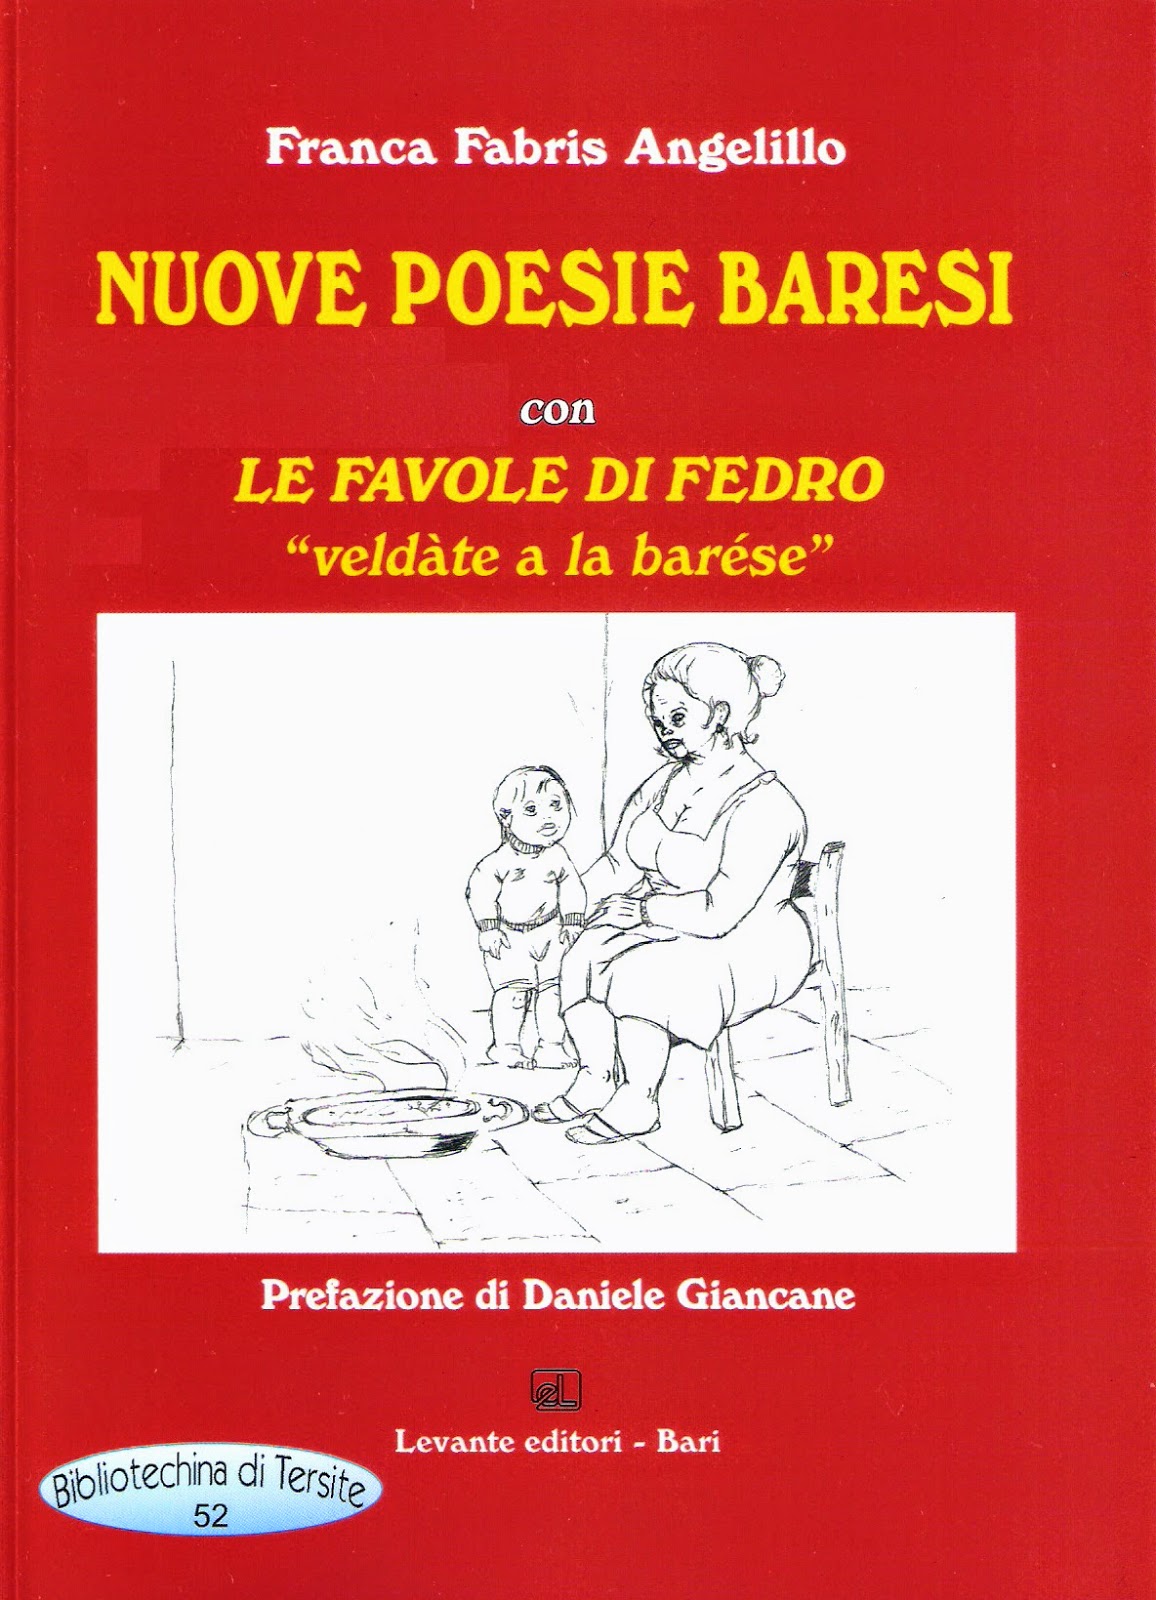 Poesie Di Natale In Dialetto Barese.Fedro Tradotto In Vernacolo Barese Da Franca Angelillo Recensionilibri Org